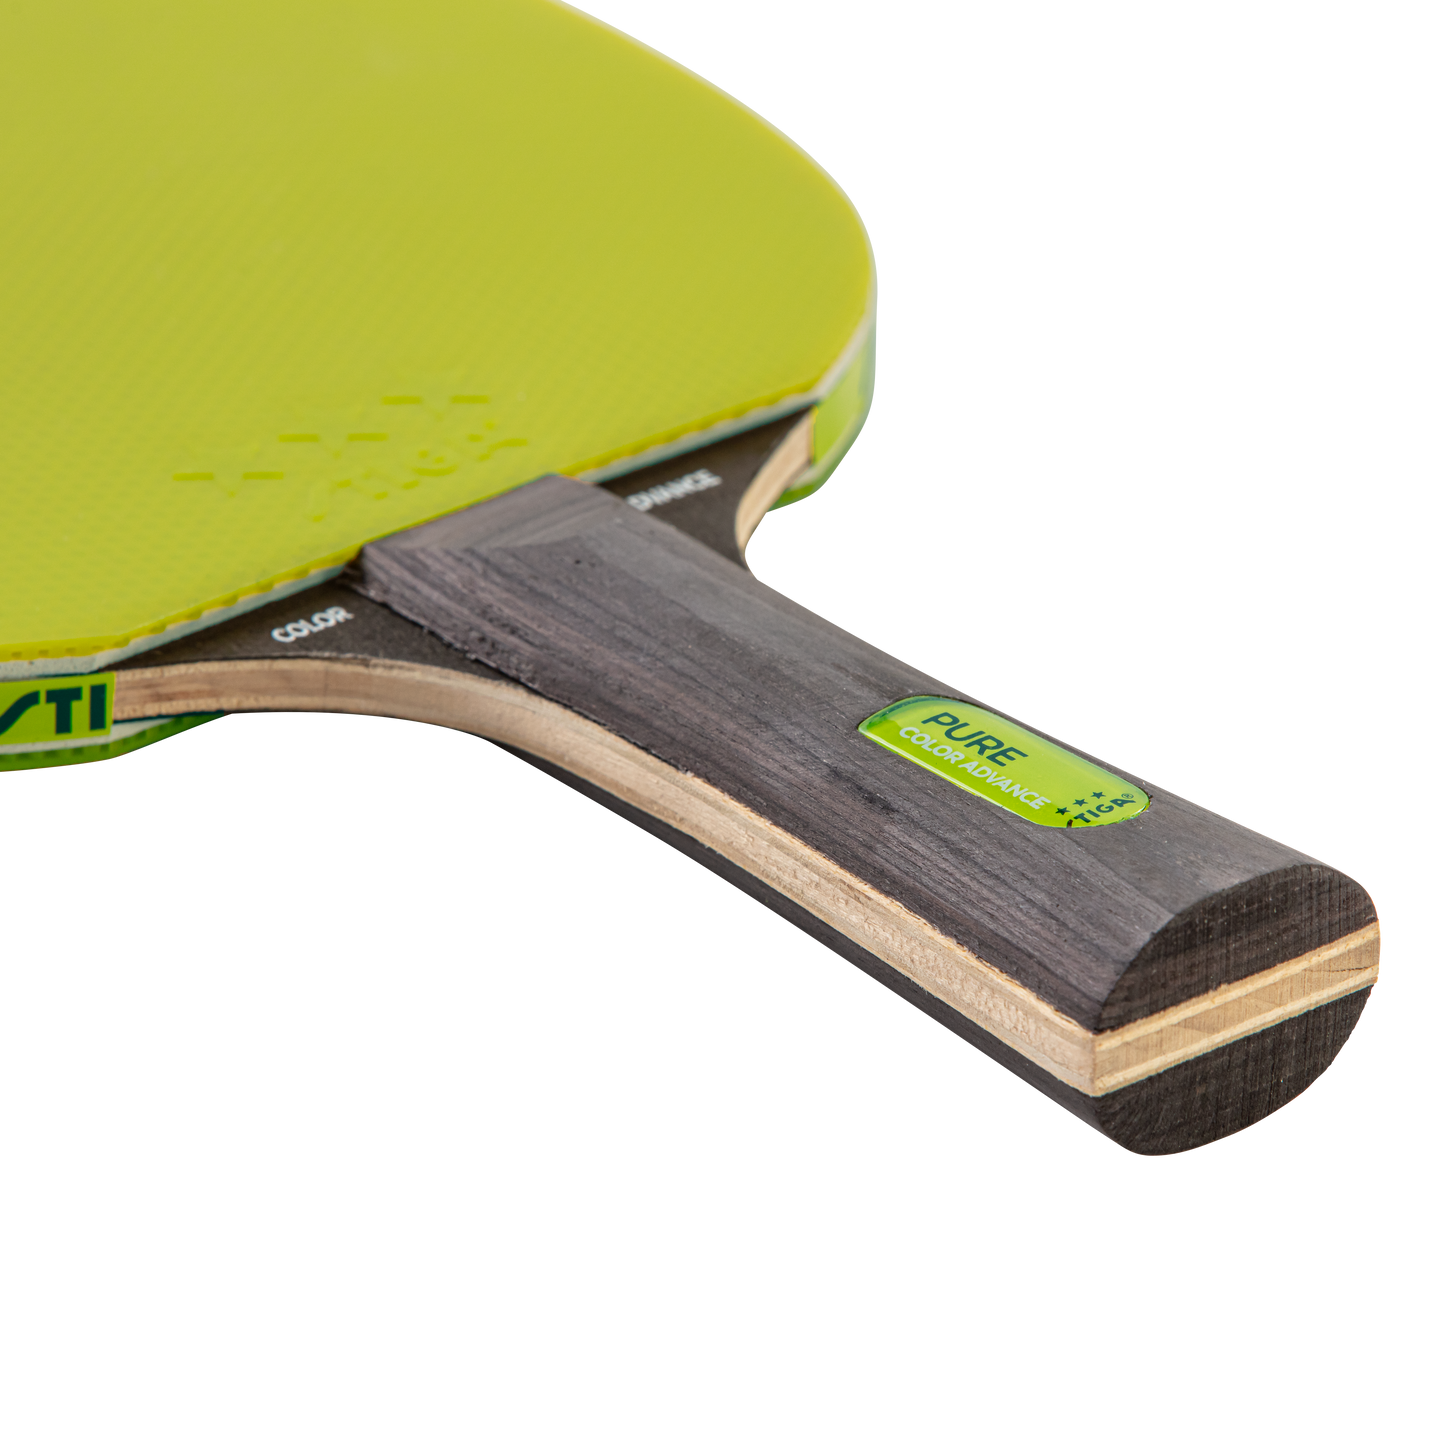 STIGA T159801 Stiga Pure Color Advance Paddle - Green